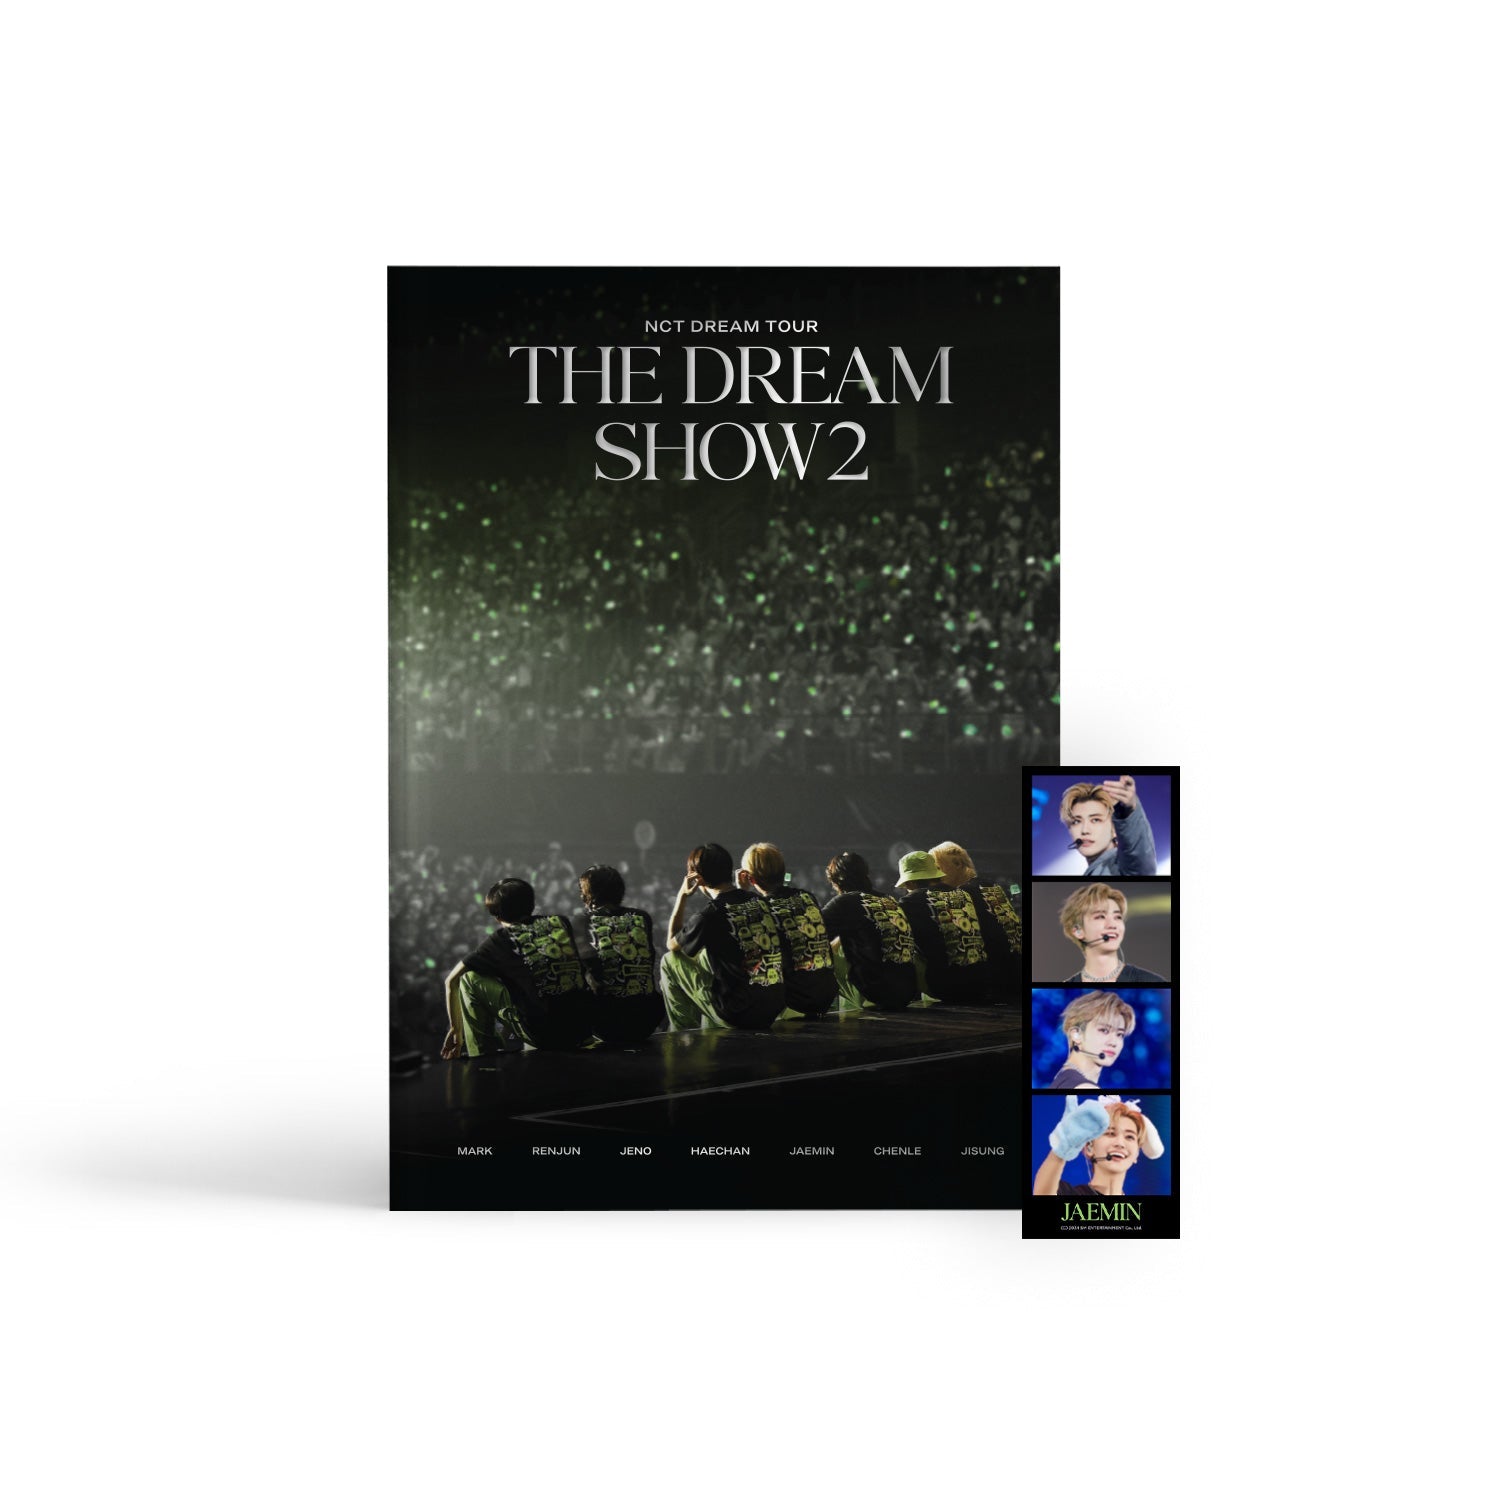 NCT DREAM TOUR 'THE DREAM SHOW2' CONCERT PHOTOBOOK WORLD TOUR CONCERT PB